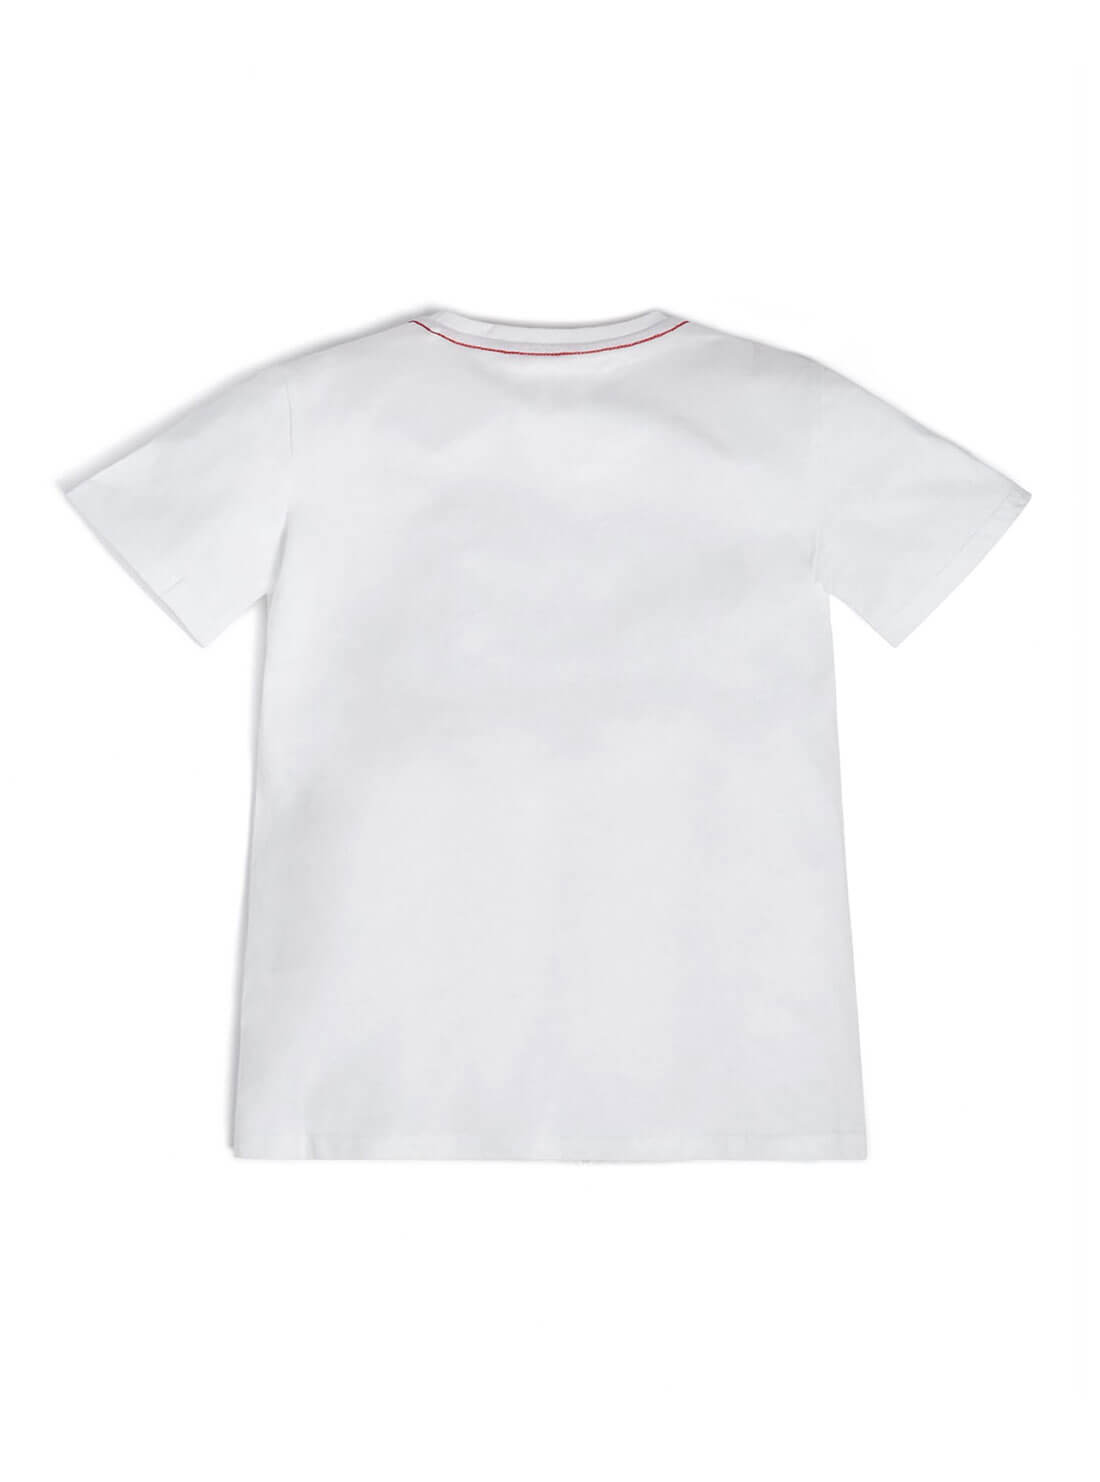 GUESS Big Boys White Logo T-Shirt (7-16) L73I55K8HM0 Back View